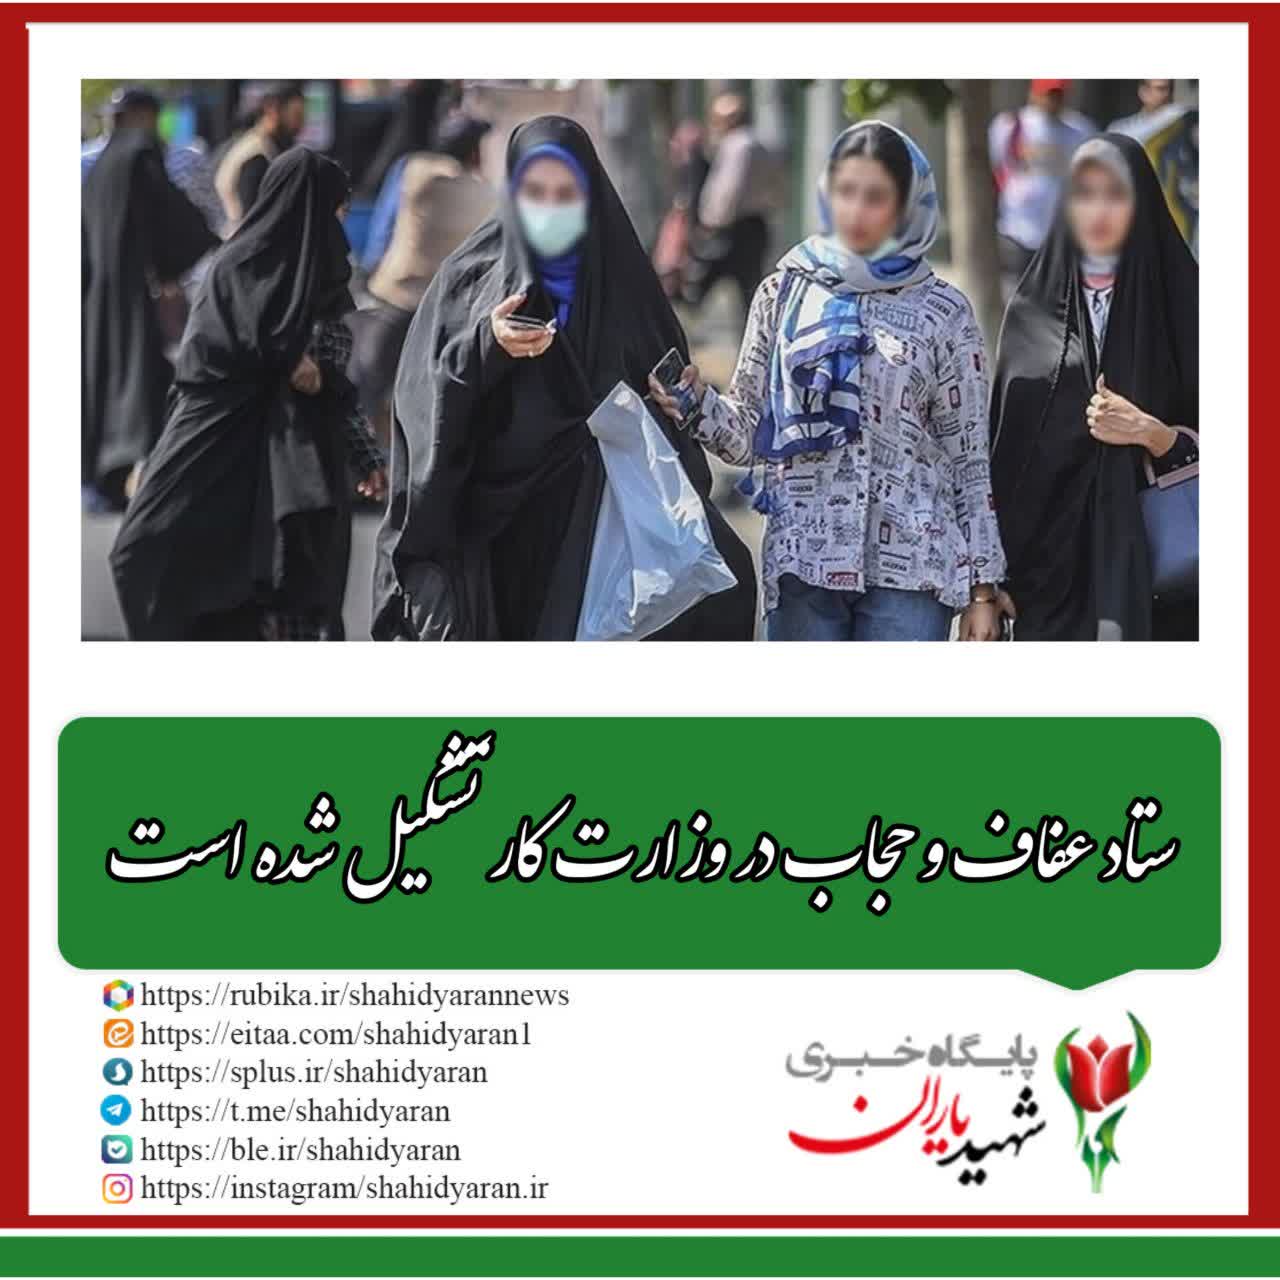 مرتضوی: ستاد عفاف و حجاب در وزارت کار تشکیل شده است